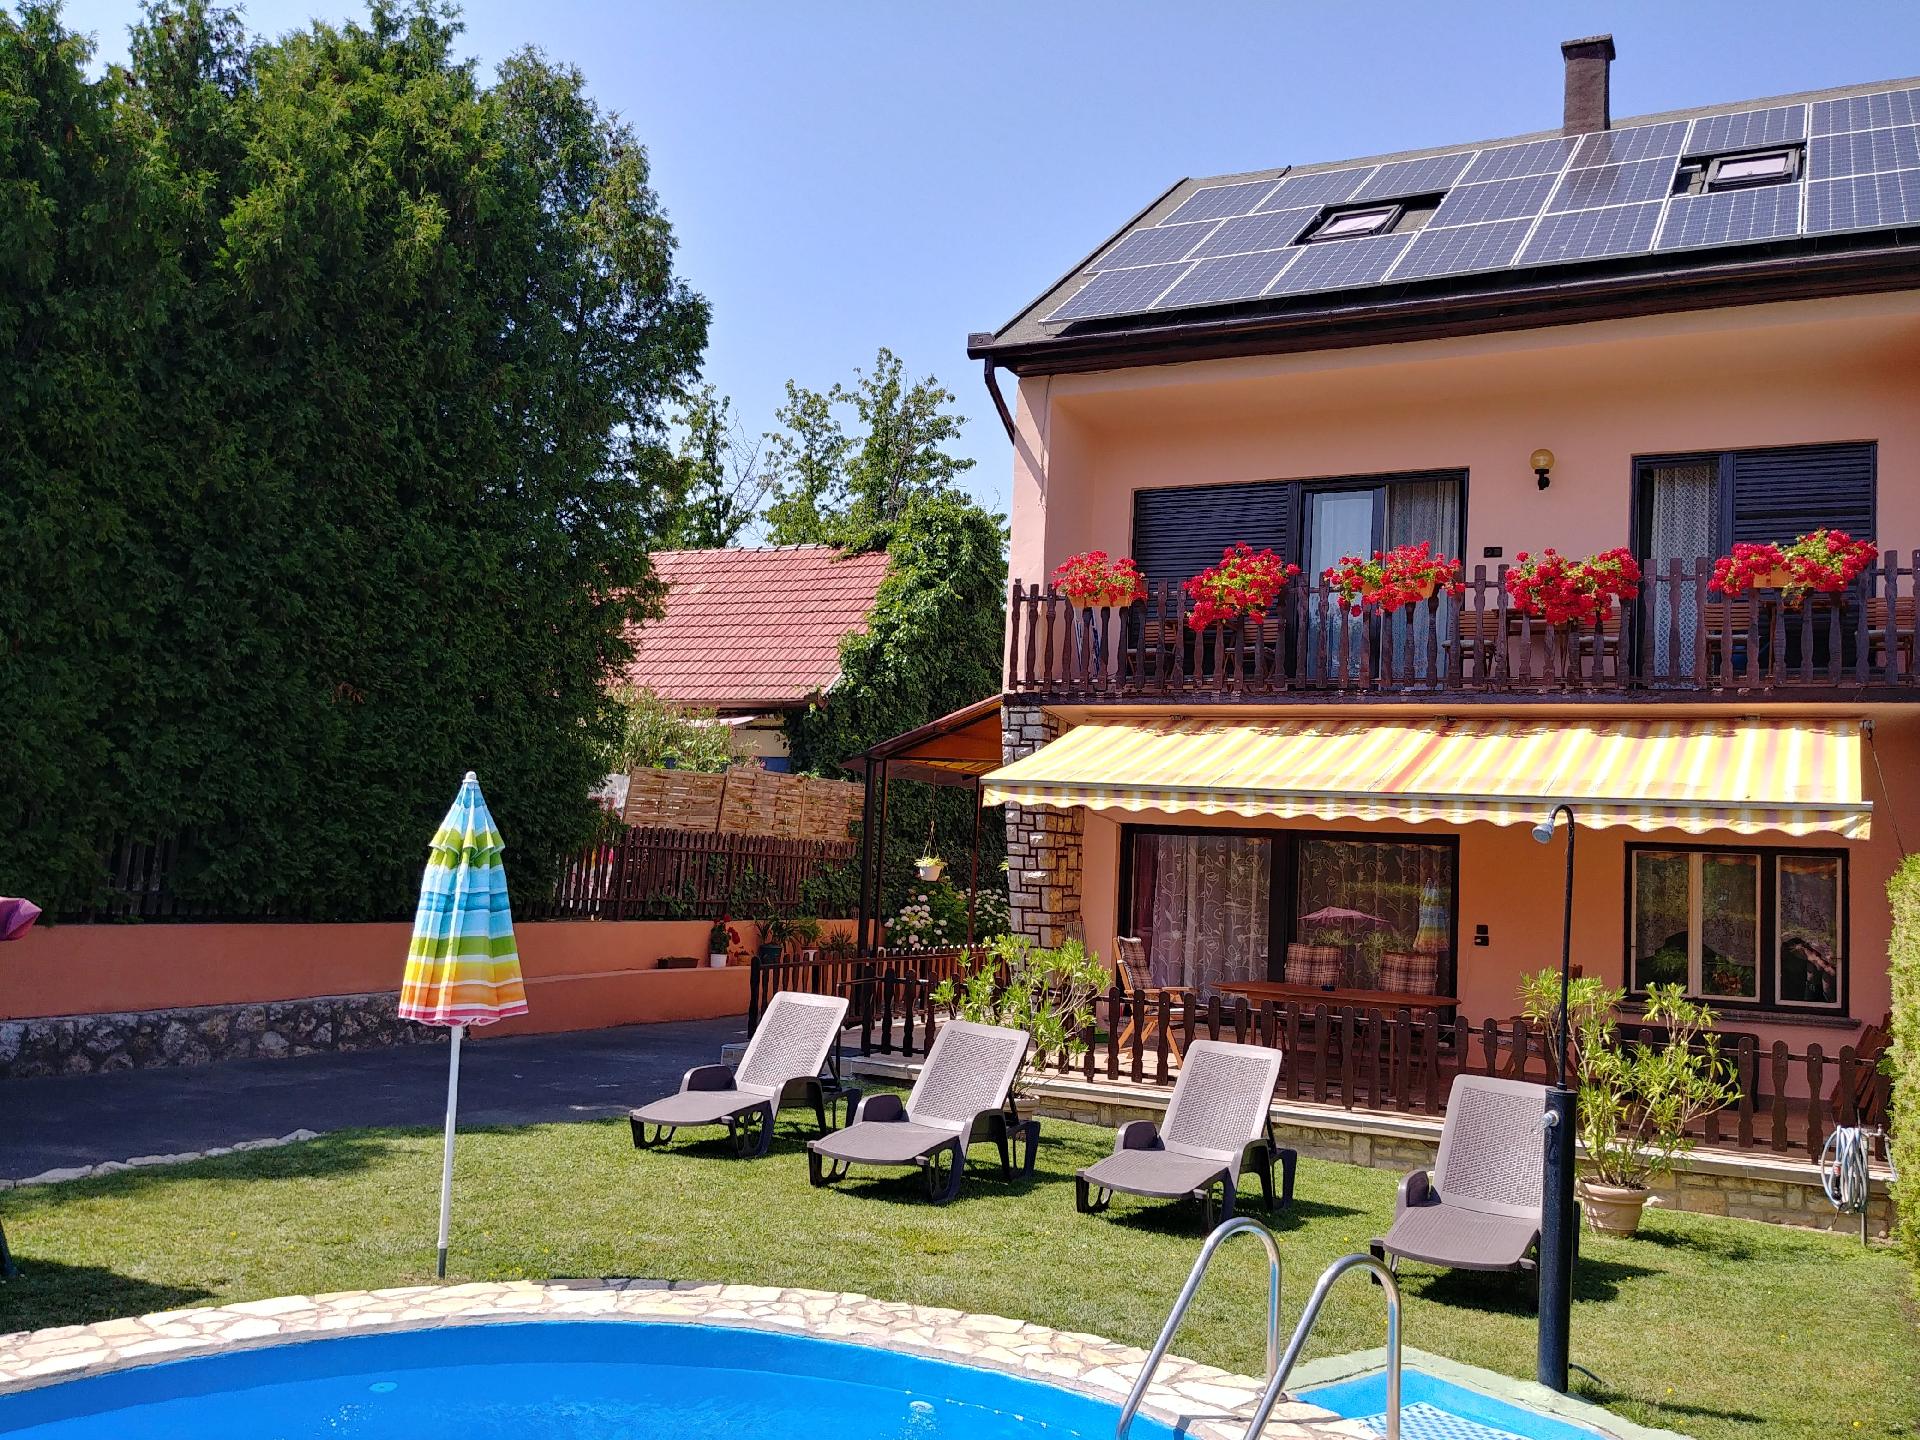 Ferienwohnung für 9 Personen ca. 140 m²  Ferienwohnung am Balaton Plattensee